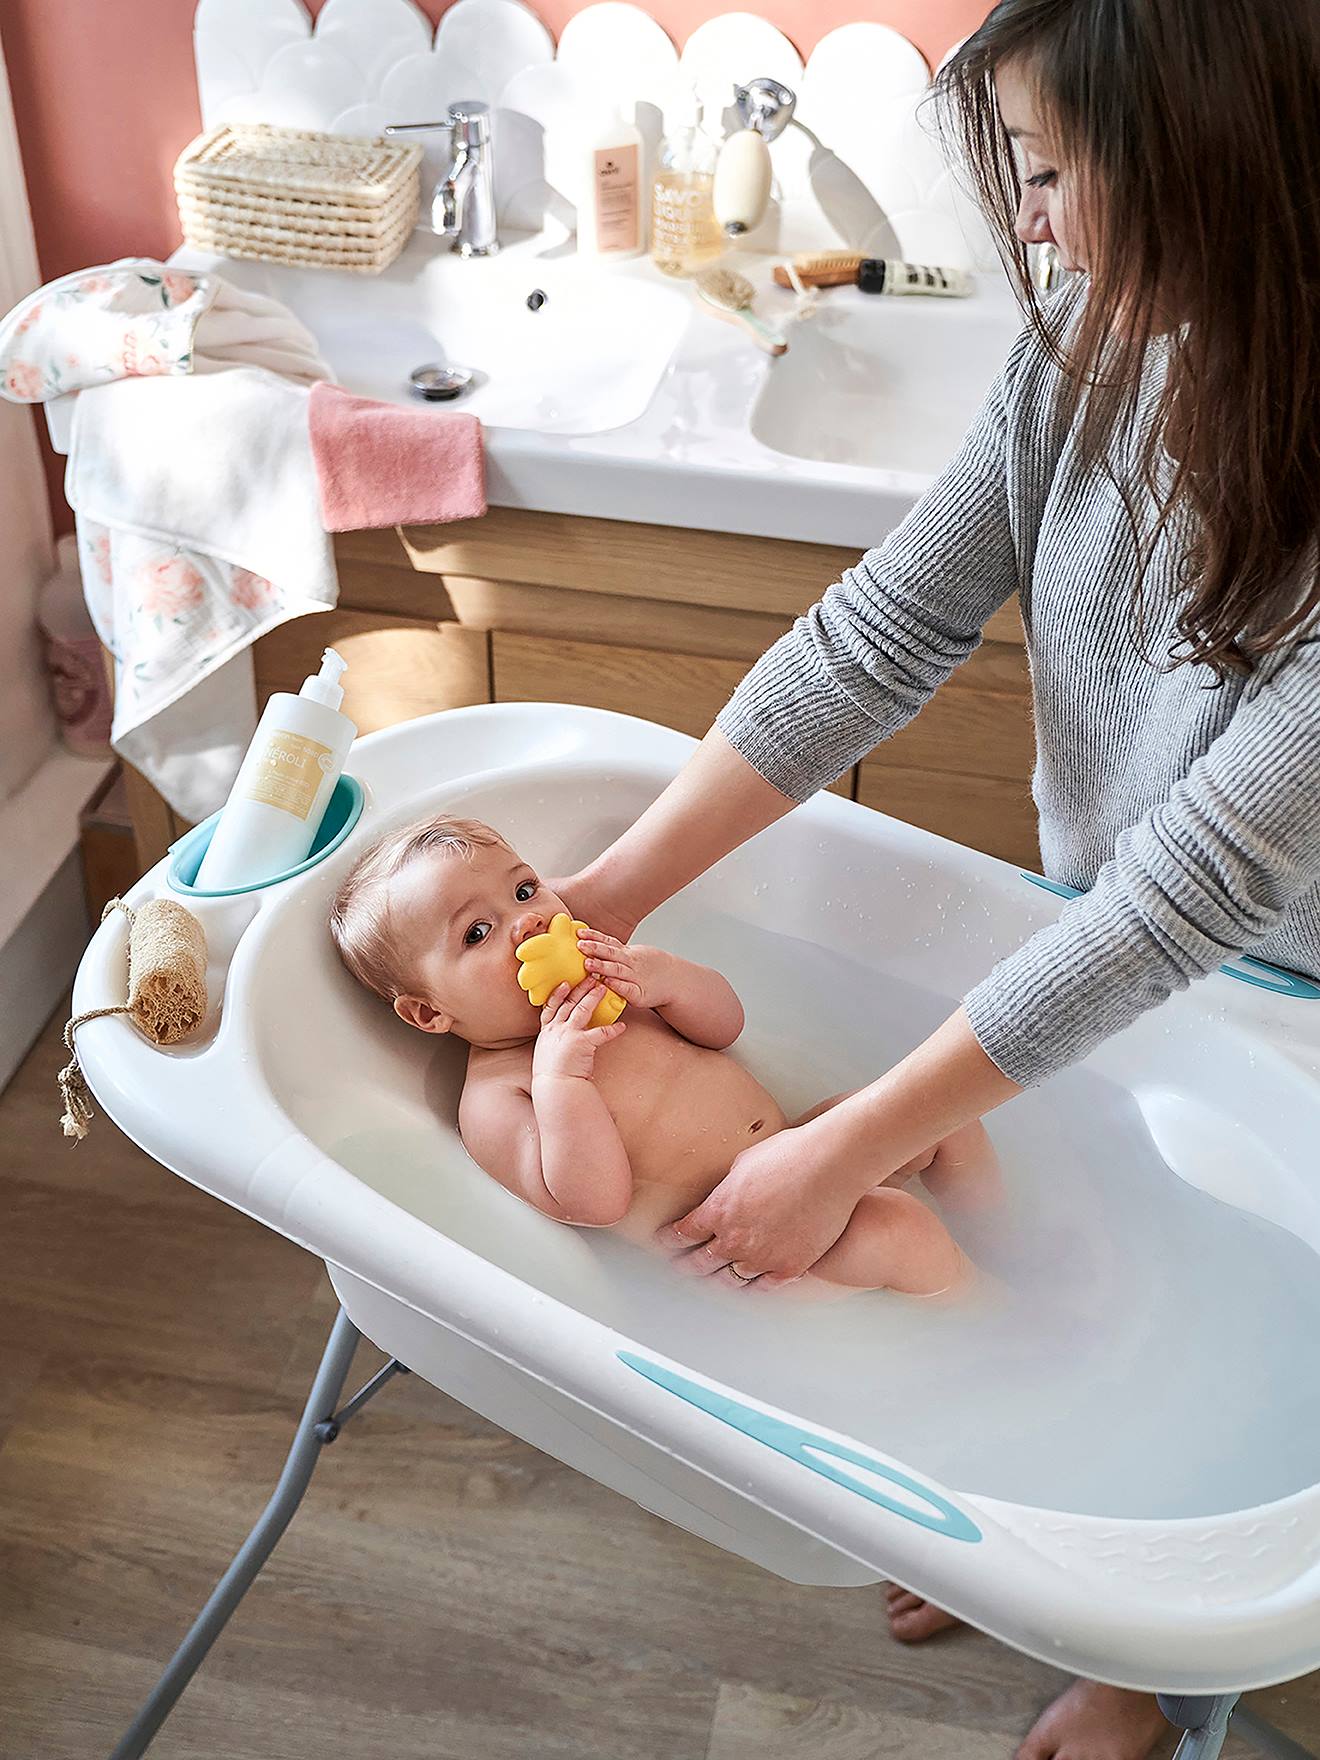 Comment bien choisir et utiliser une baignoire bébé sur pied: retexp malin!  astuce importante ! 